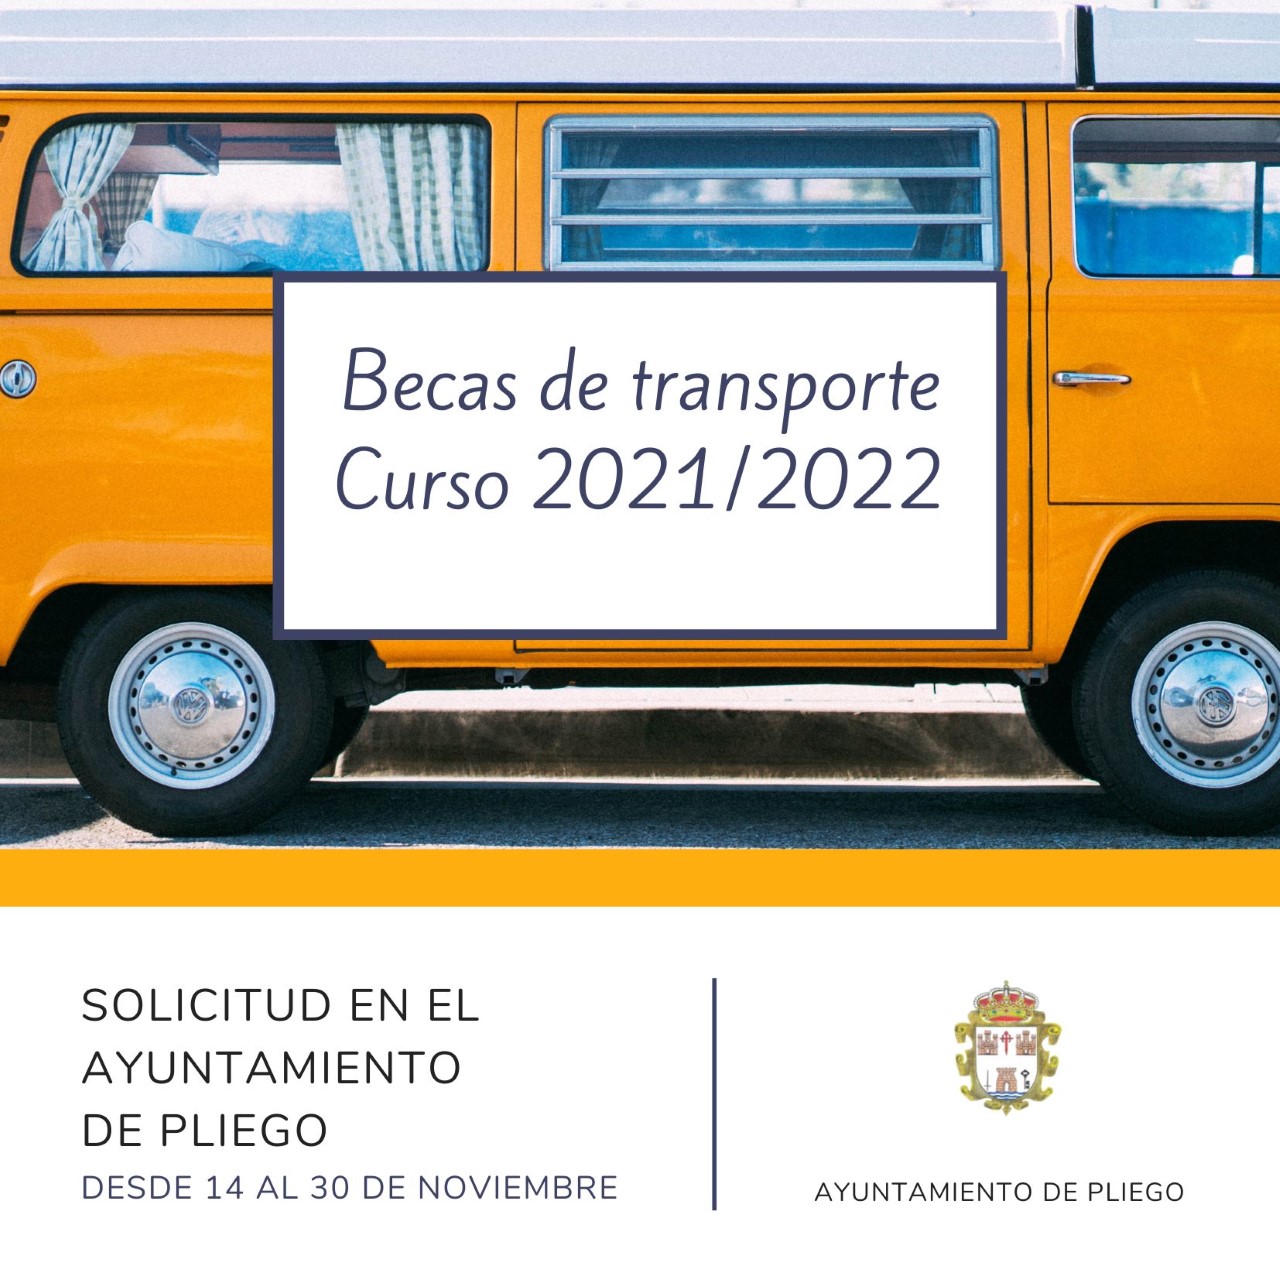 Becas transporte curso 2021/2022